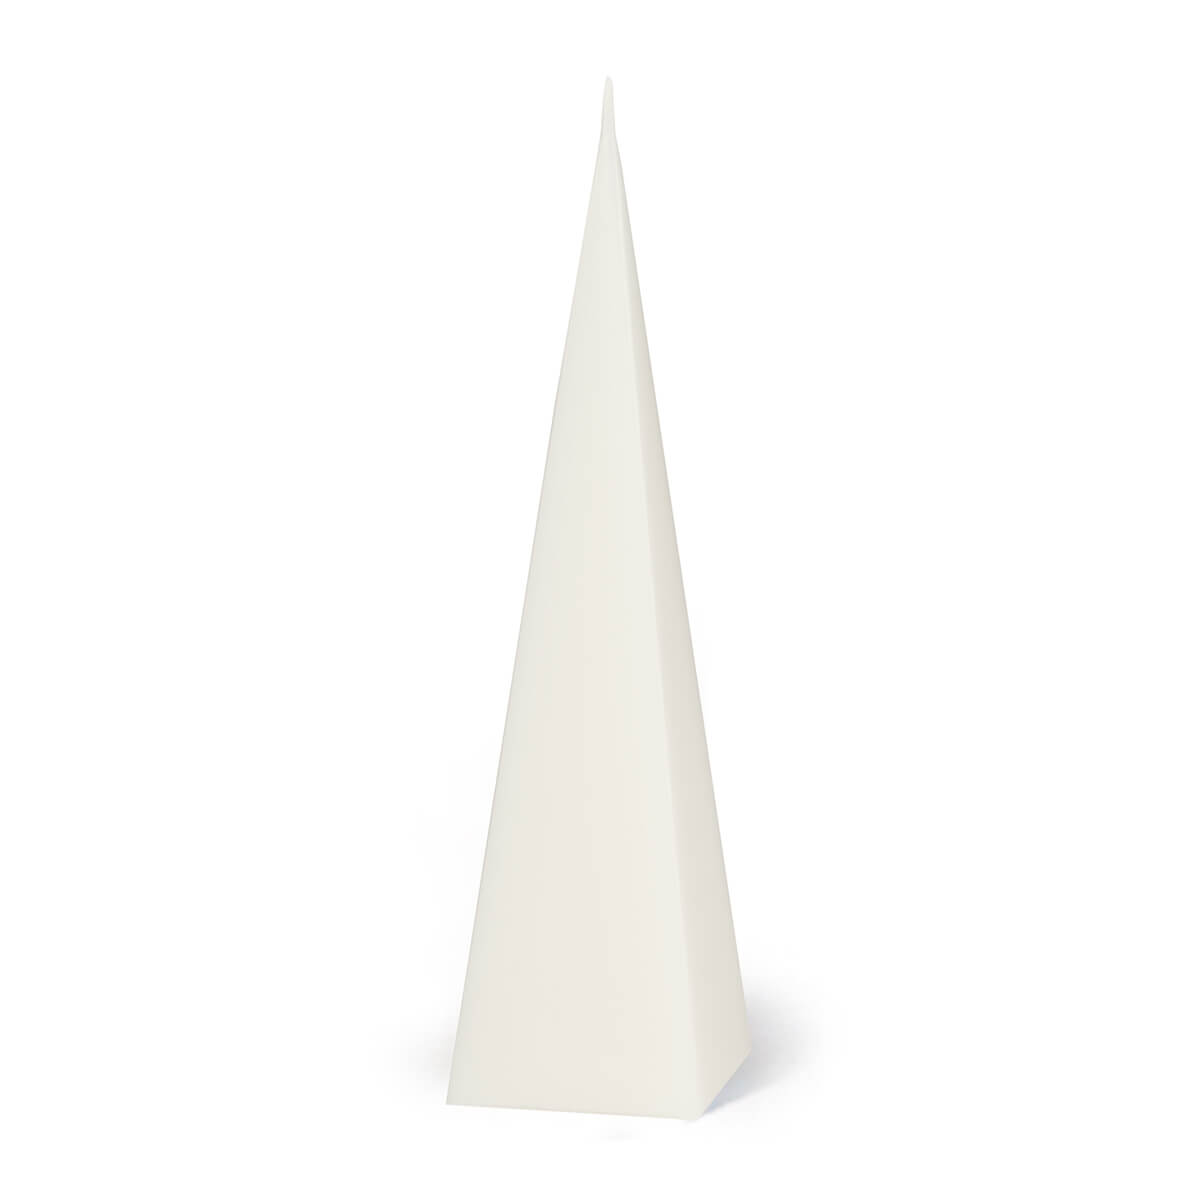 Giessform für Kerzen - Pyramide 228/60 mm